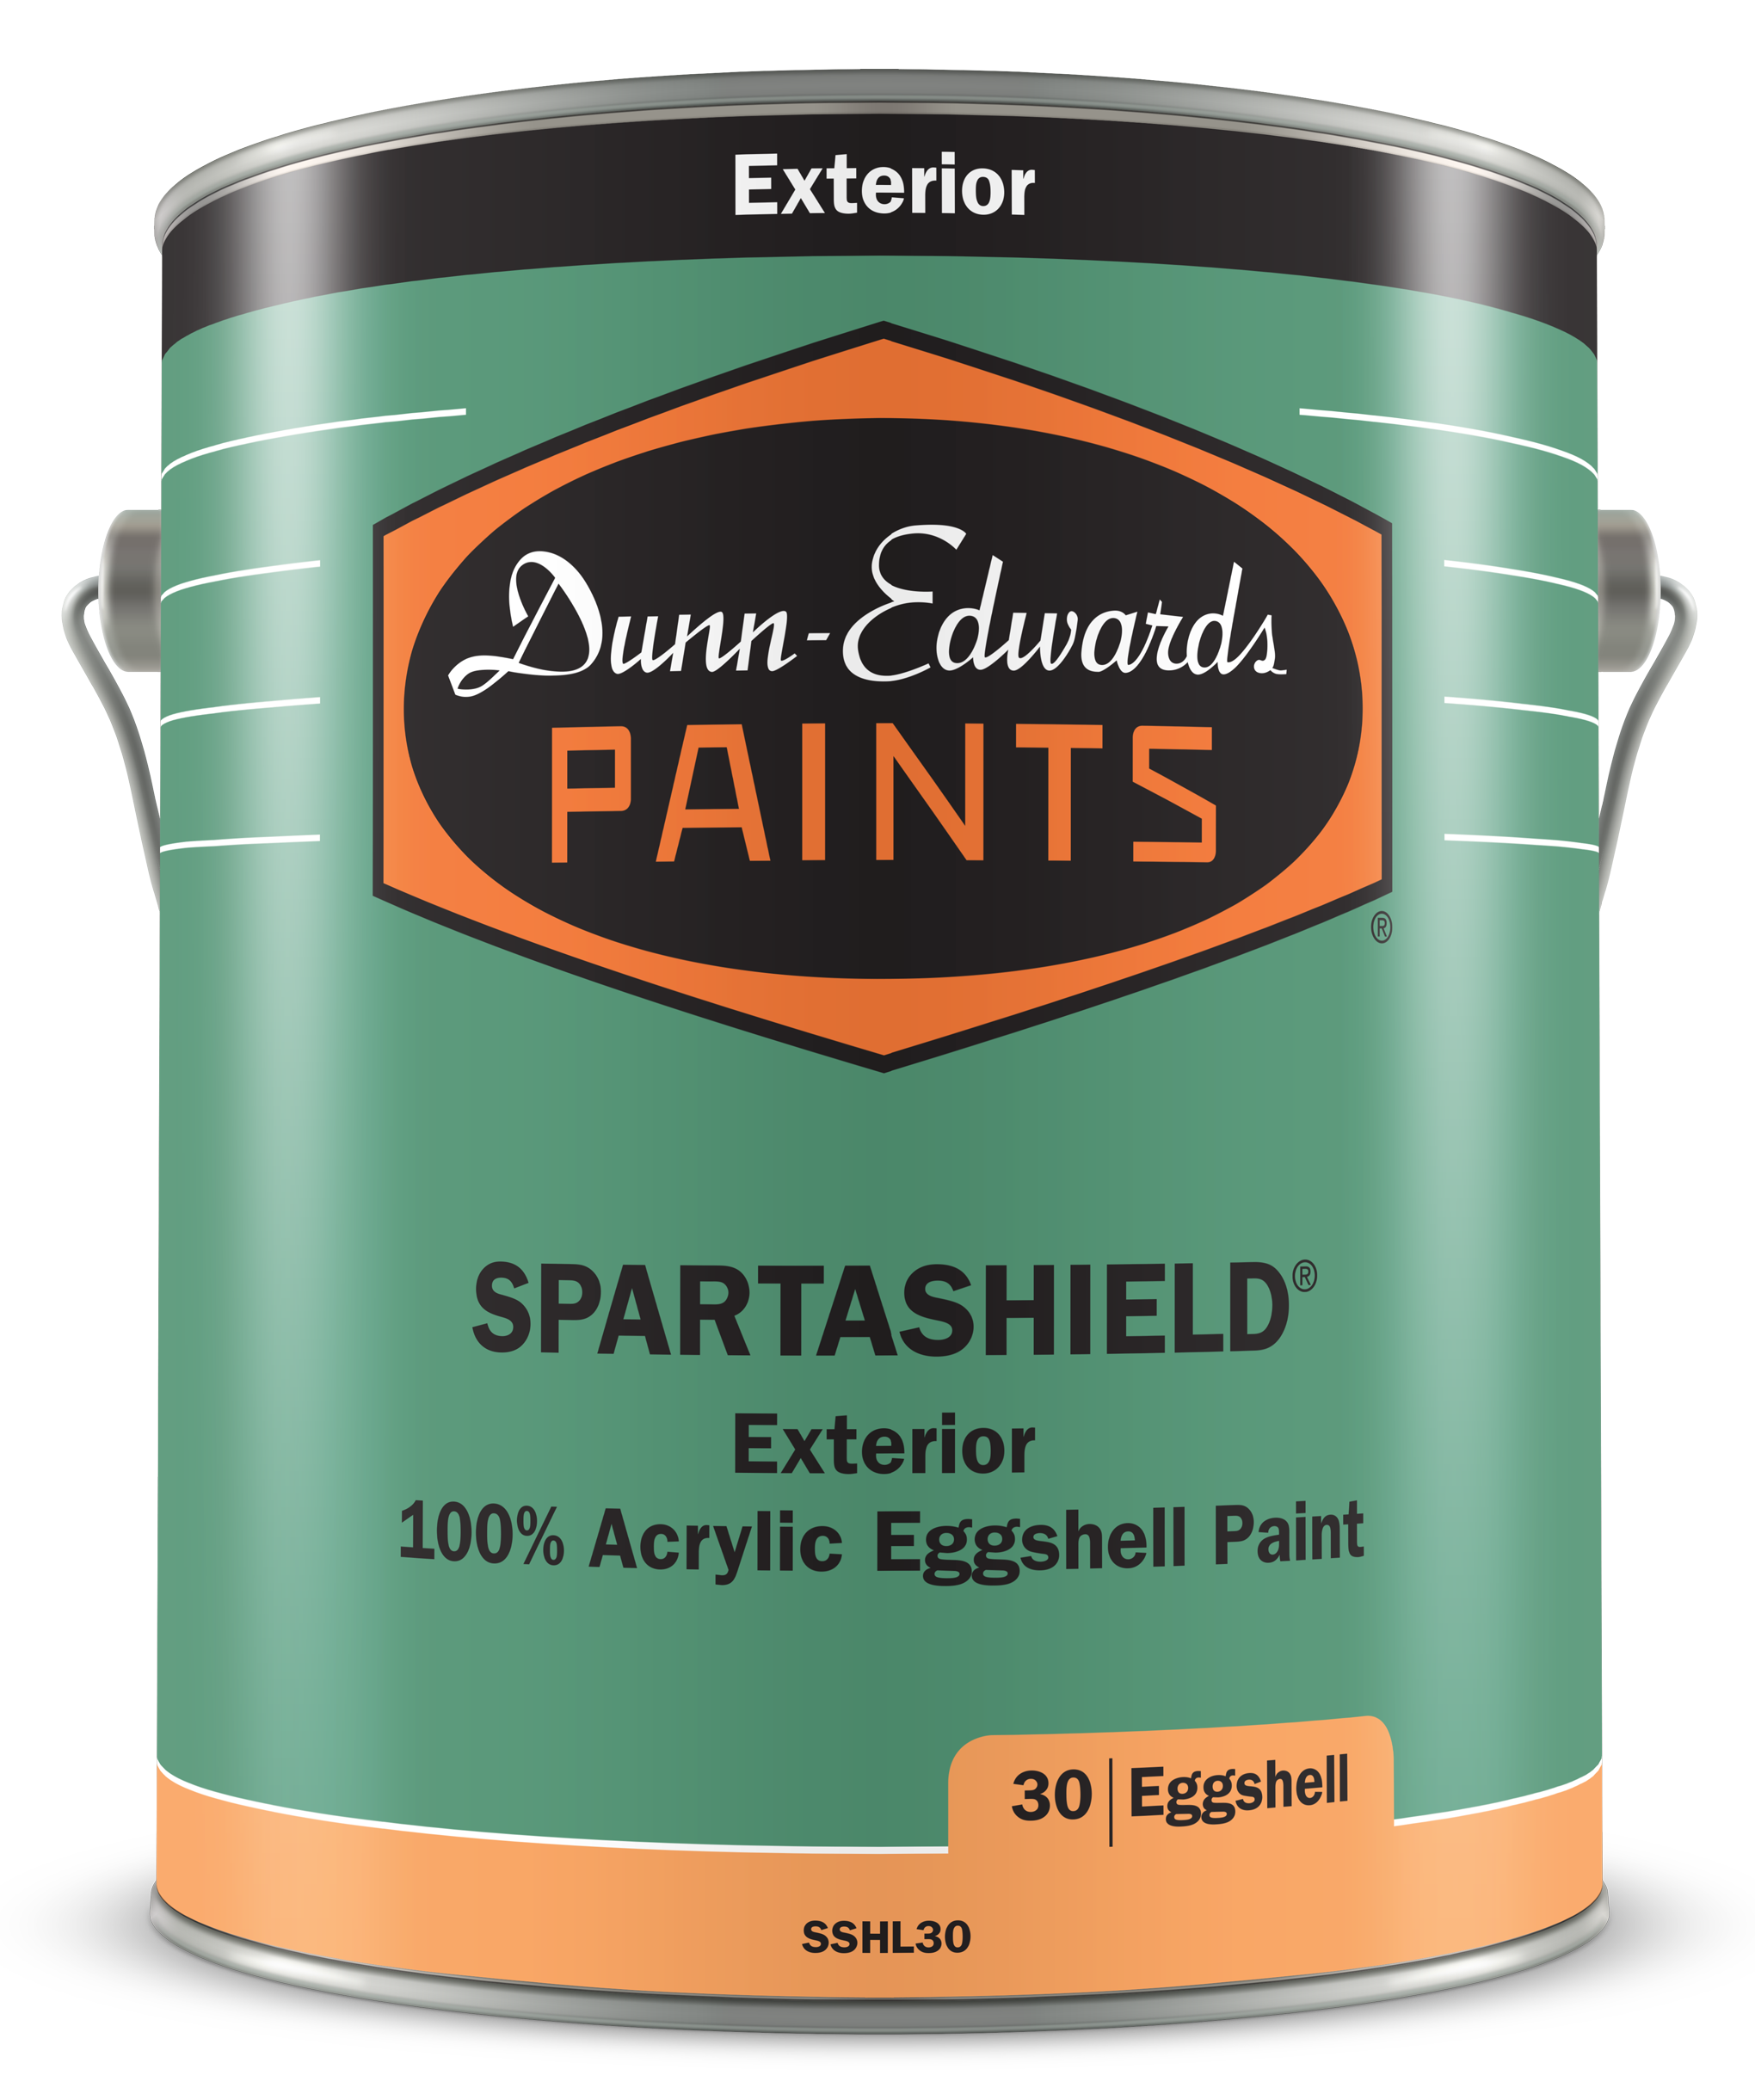 SPARTASHIELD Exterior 100% Acrylic Eggshell Paint Can